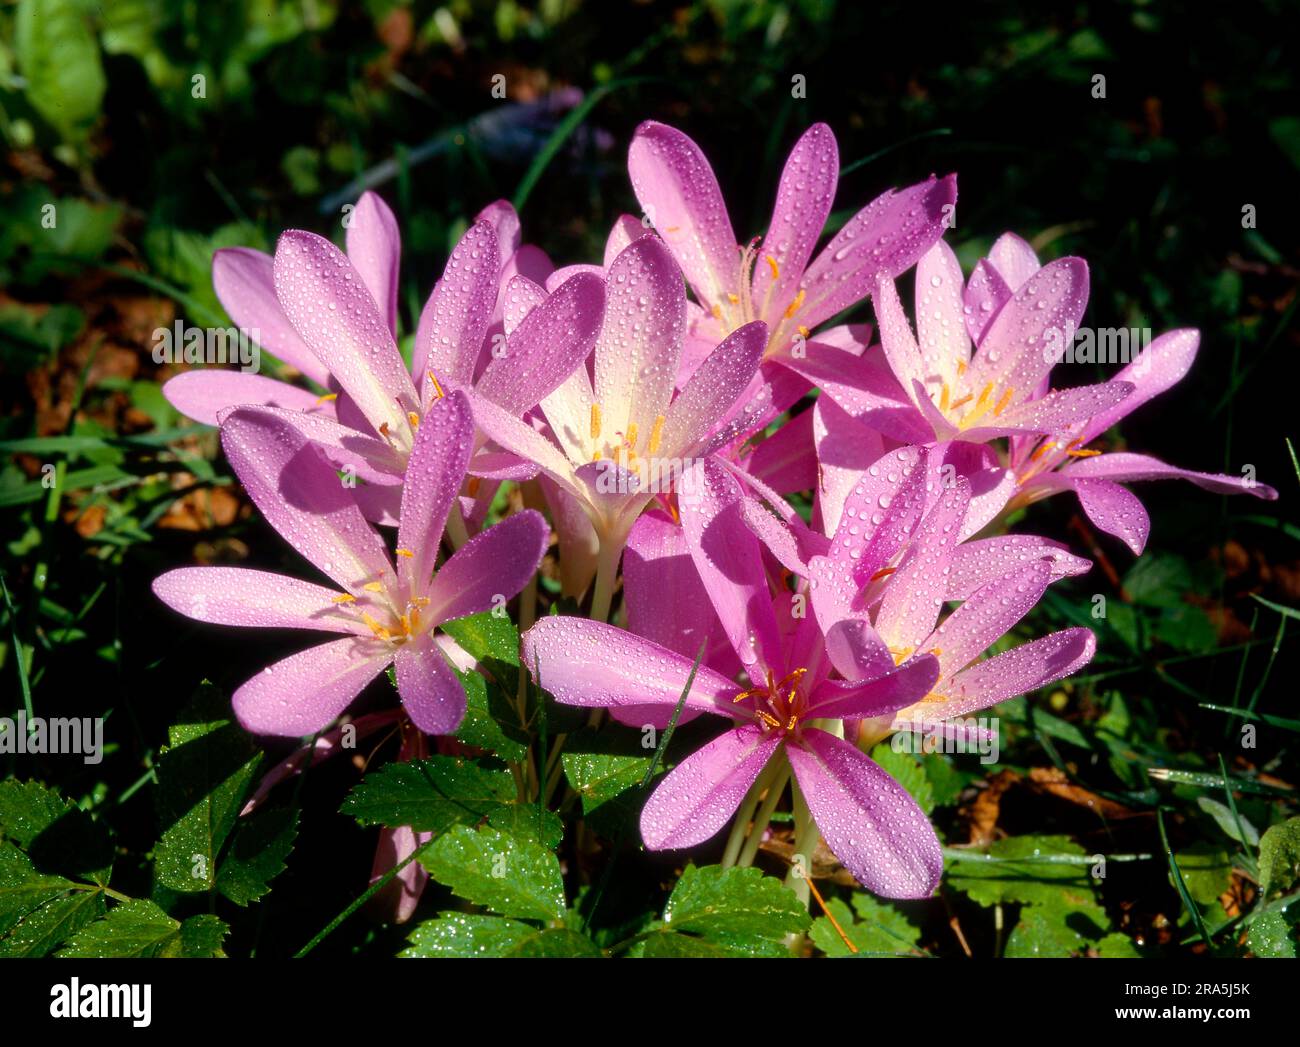 Meadow saffron (Colchicum autumnale) or meadow saffron Stock Photo